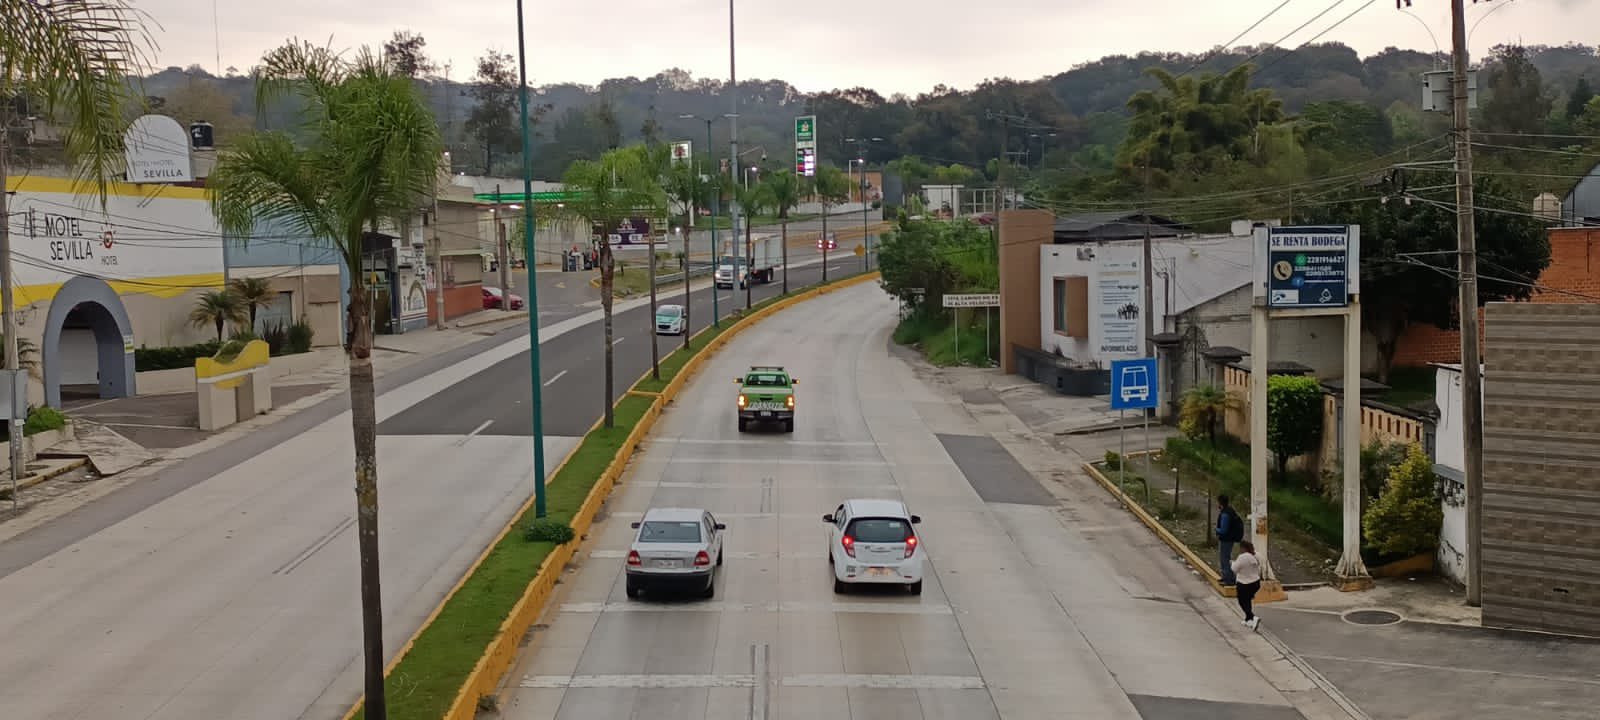 Se tomarán más acciones para reducir accidentes en carretera Xalapa-Coatepec: Cuitláhuac García